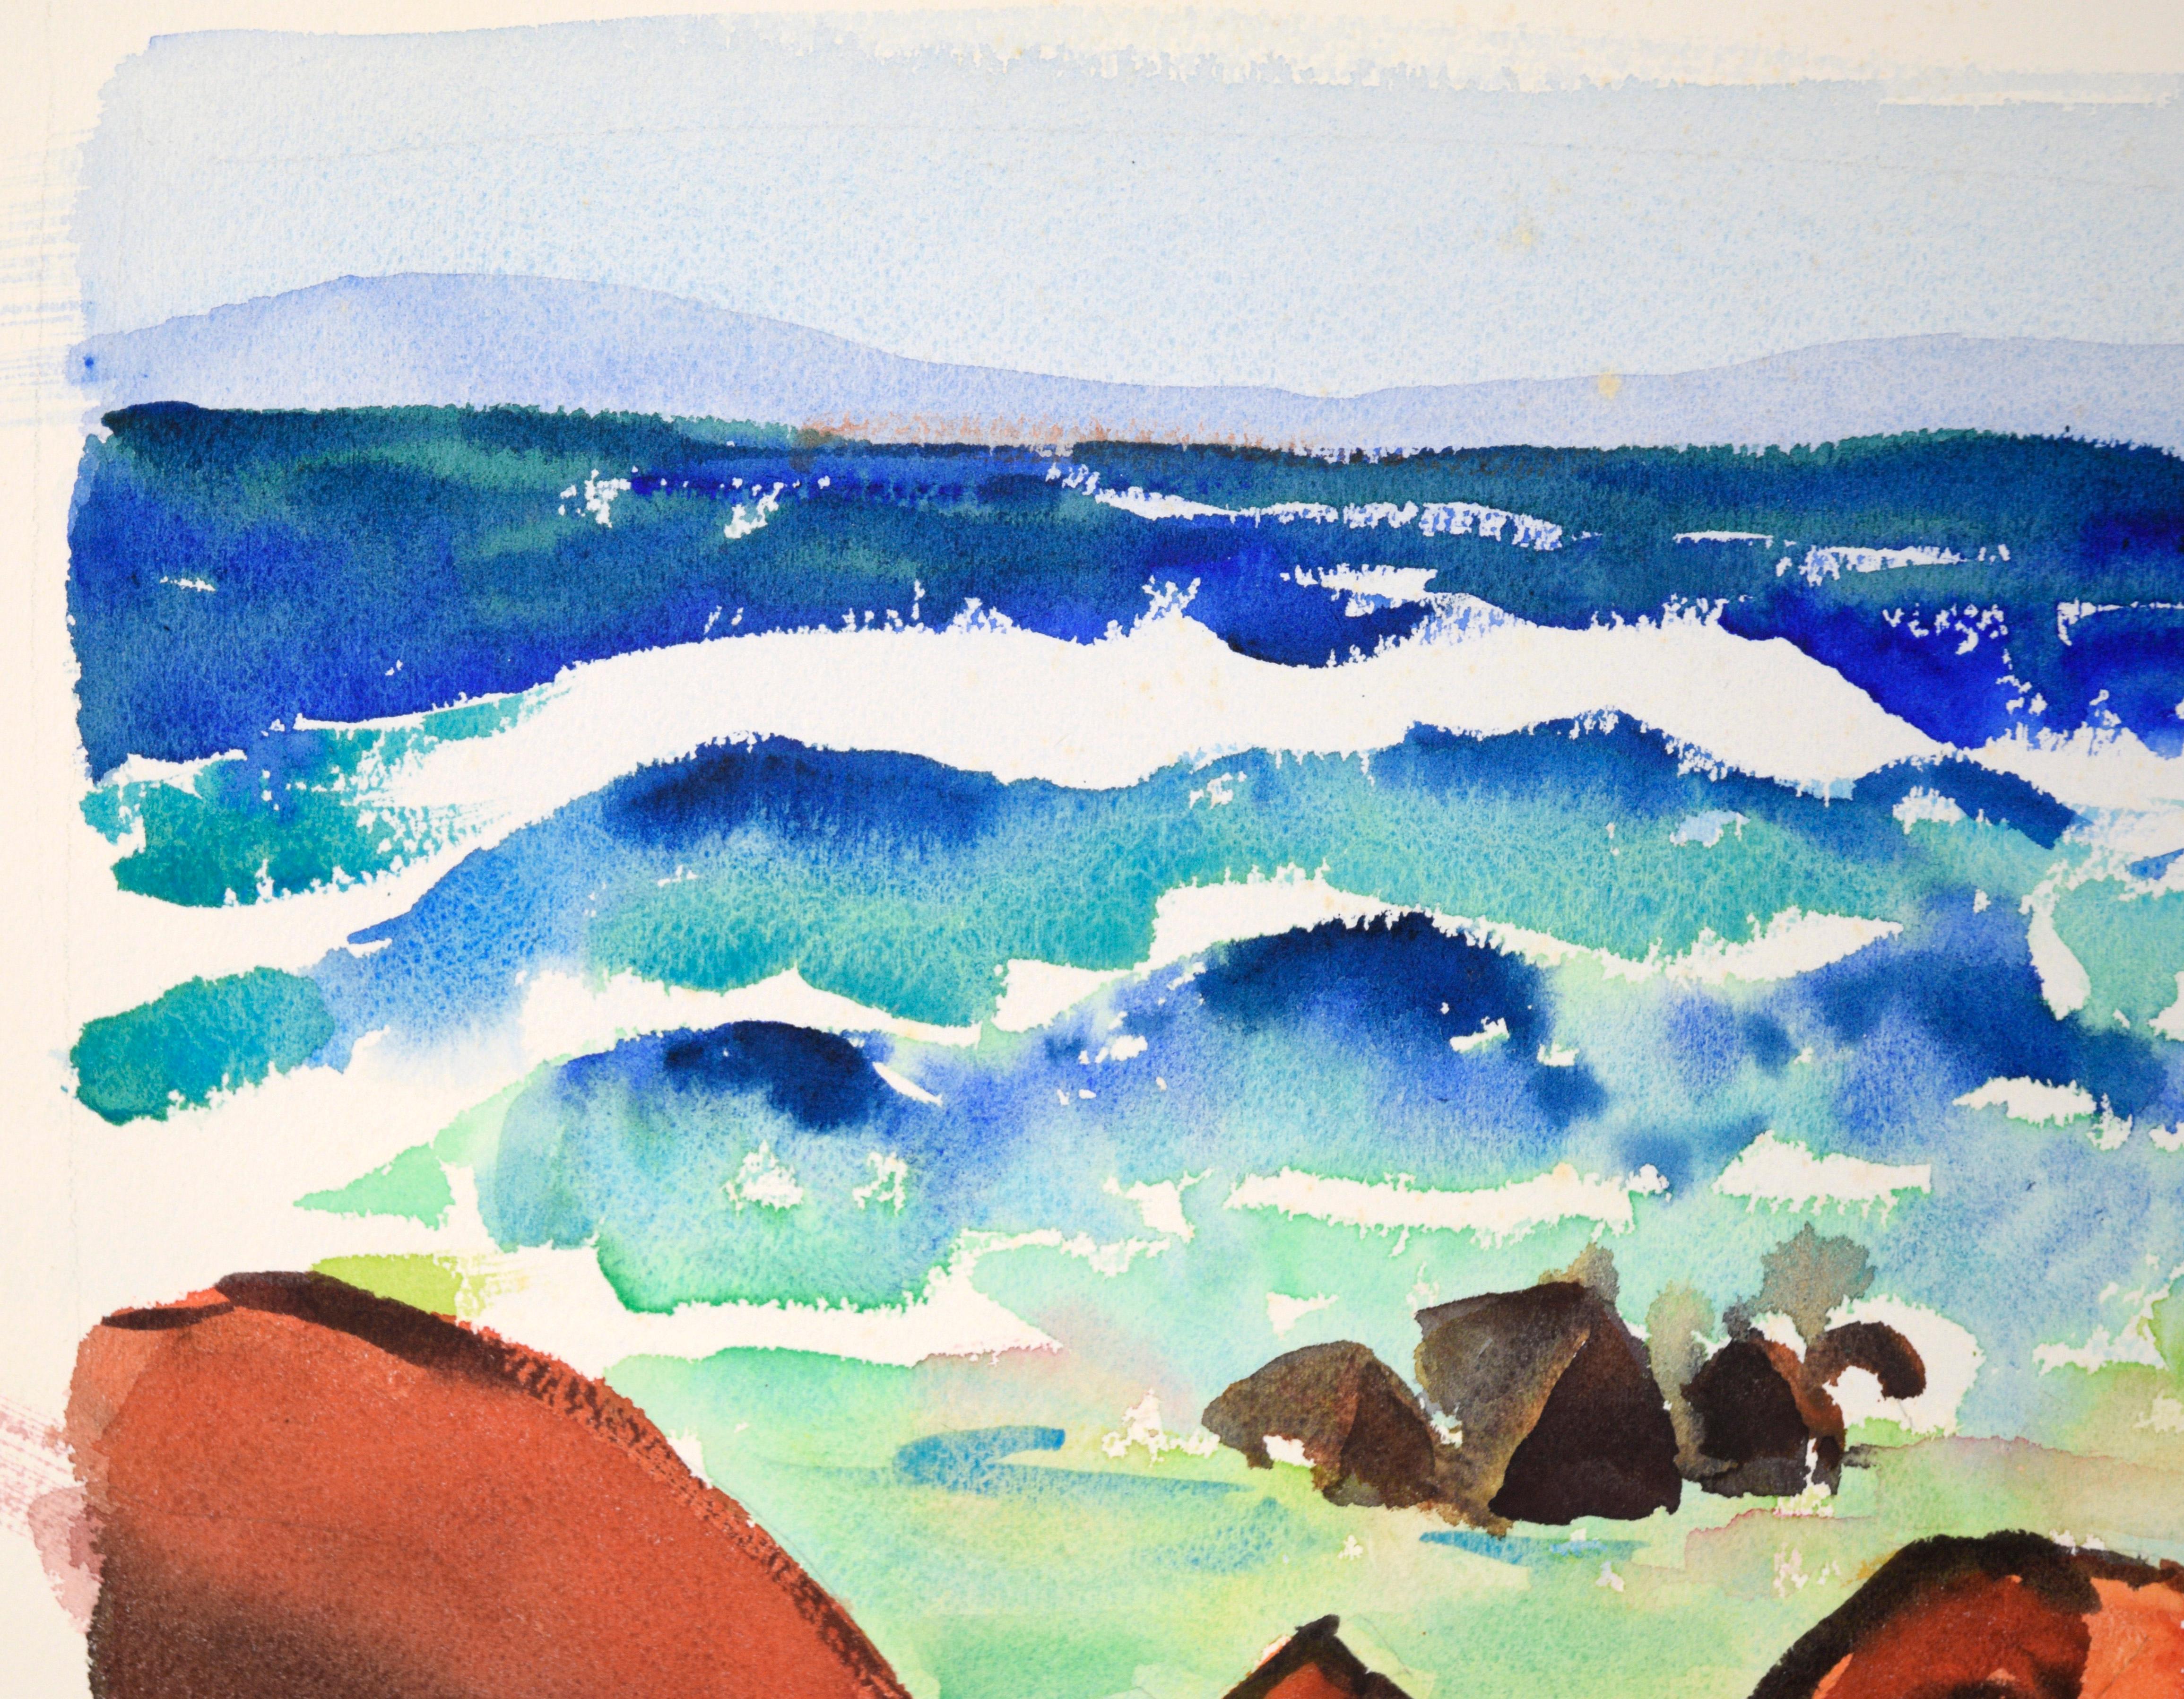 Kalifornische modernistische Meereslandschaft des 20. Jahrhunderts in Aquarell auf Papier (Amerikanischer Impressionismus), Art, von Lucile Marie Johnston